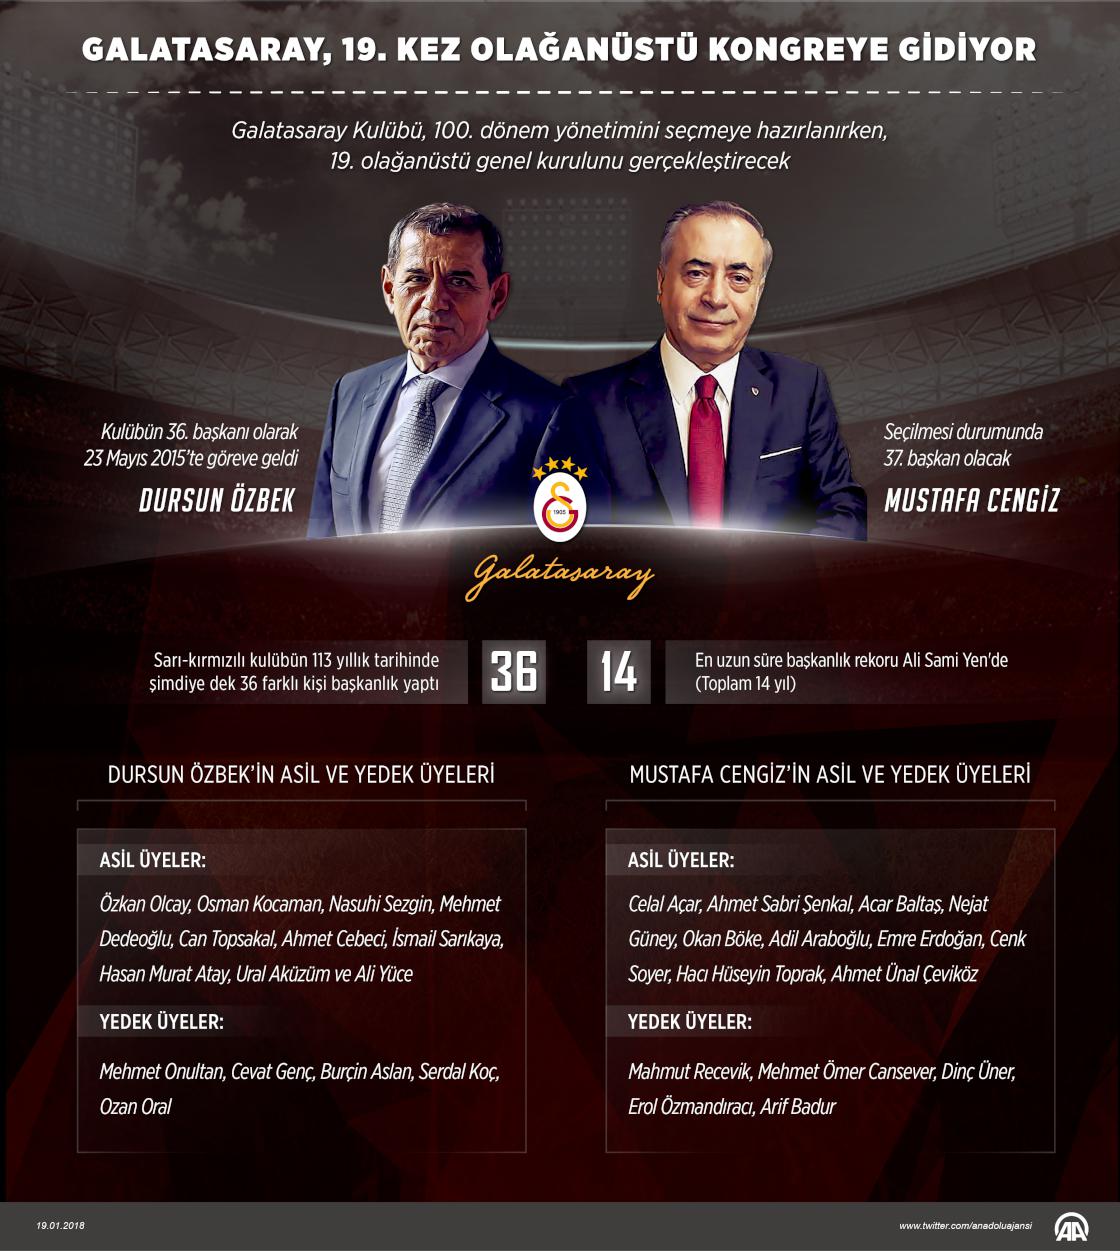 Galatasaray, 19. kez olağanüstü kongreye gidiyor